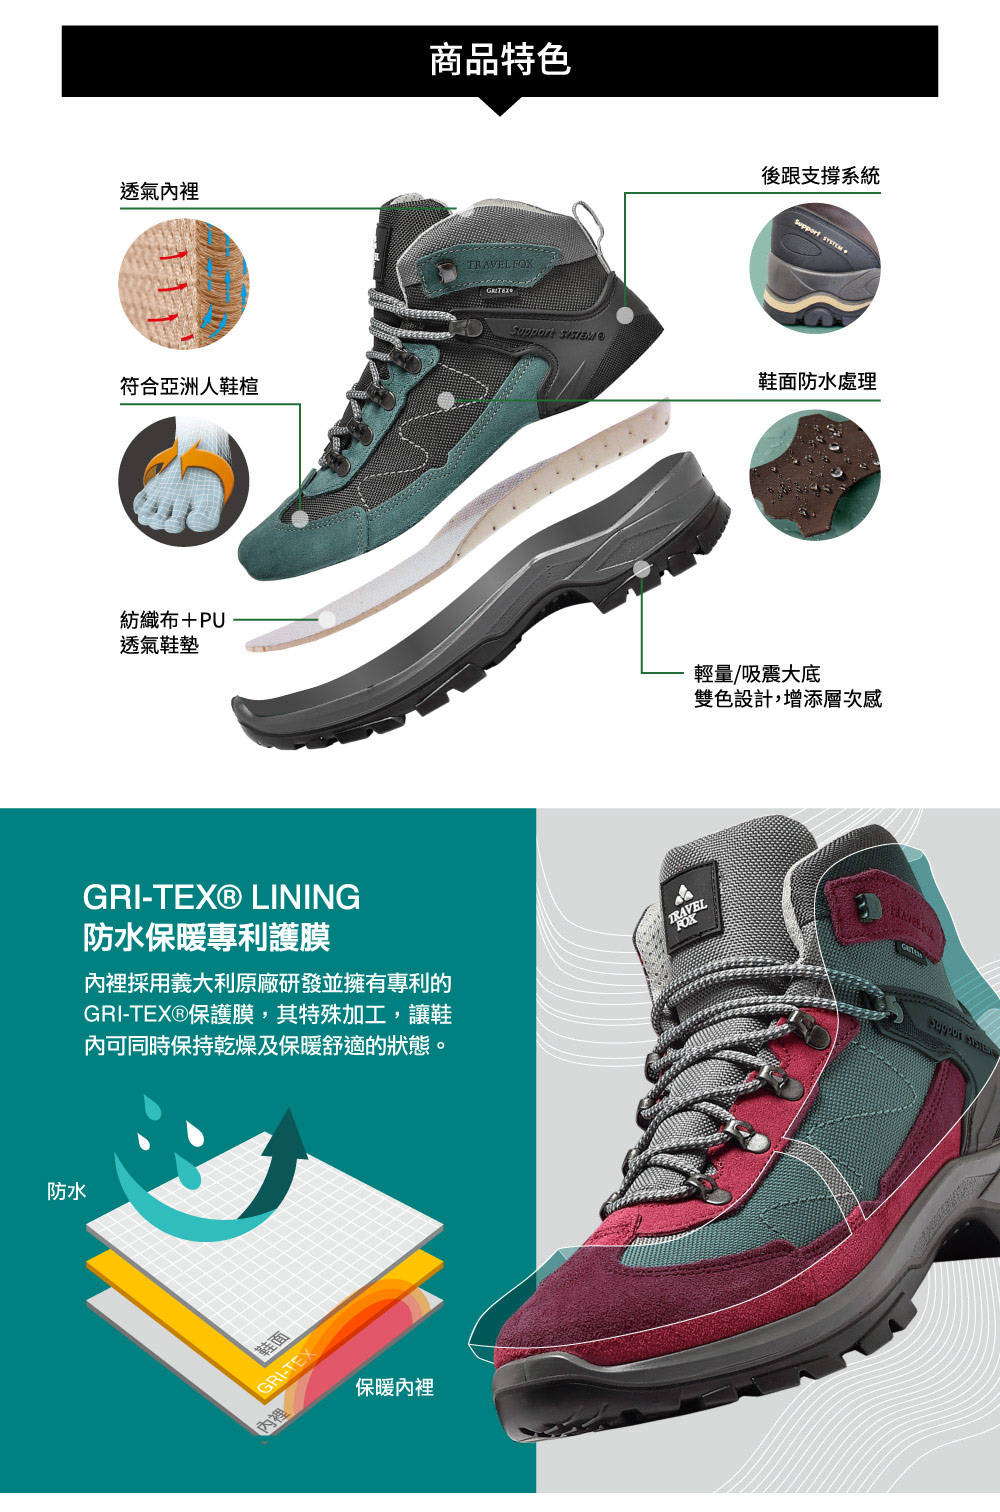 GRITEX保護膜,其特殊加工,讓鞋